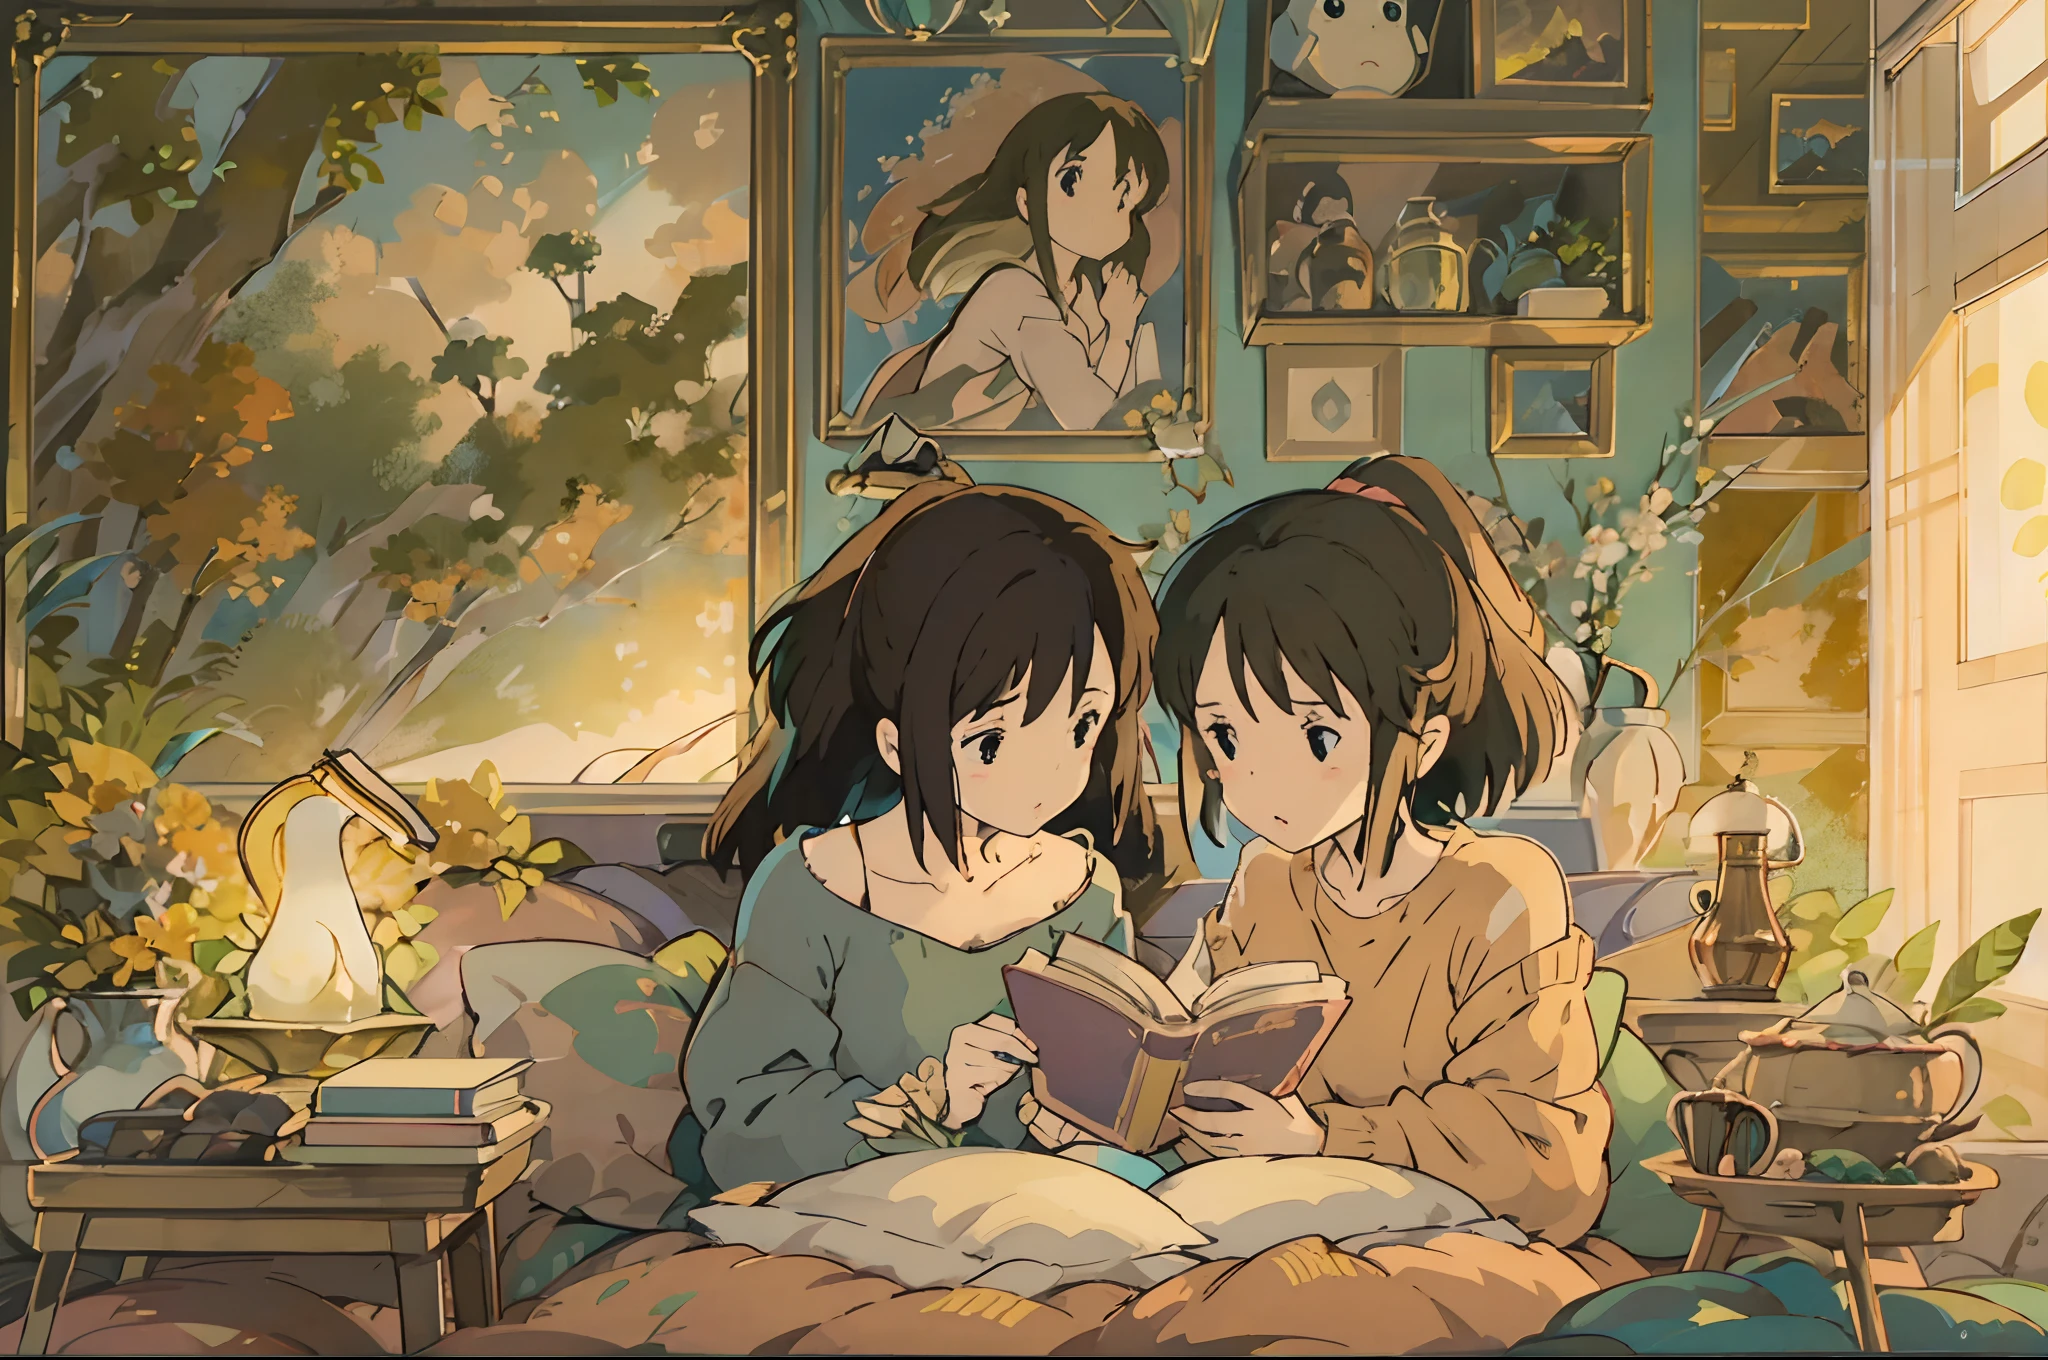 Una ilustración digital de 2 niñas completamente absortas leyendo en una cómoda cama., inspirado en el estilo de Hayao Miyazaki. La obra de arte debe estar llena de detalles encantadores y cautivadores., irradiando un toque de fantasía. Las chicas deberían tener hermosas, Ojos cautivadores que son intrincadamente detallados., así como unos labios maravillosamente delicados. La escena debe ser visualmente atractiva., presentando un ambiente acogedor y atractivo. La ilustración debe crearse utilizando varios medios., como la ilustración digital, para mejorar el efecto visual general. La atención al detalle debe ser notable., garantizar que cada elemento se represente con la máxima precisión. La imagen debe poseer una calidad extremadamente alta., con una resolución de 4K u 8K, y ser una obra maestra por derecho propio. El estilo de la obra de arte debe capturar la esencia de las reconocidas obras de Hayao Miyazaki., presentando una mezcla única de imaginación, contar historias, y visuales vibrantes. Los colores utilizados deben ser cálidos y atractivos., creando un ambiente relajante y acogedor. La iluminación debe representarse hábilmente., iluminando la escena de una manera suave y gentil. En general, La ilustración debería transportar a los espectadores a un mundo de maravillas y magia., donde podrán sumergirse plenamente en el placer de leer. La combinación del estilo icónico de Miyazaki, Detalles encantadores, tonos cálidos, y un toque de fantasía deberían unirse para crear una obra de arte impresionante y cautivadora..